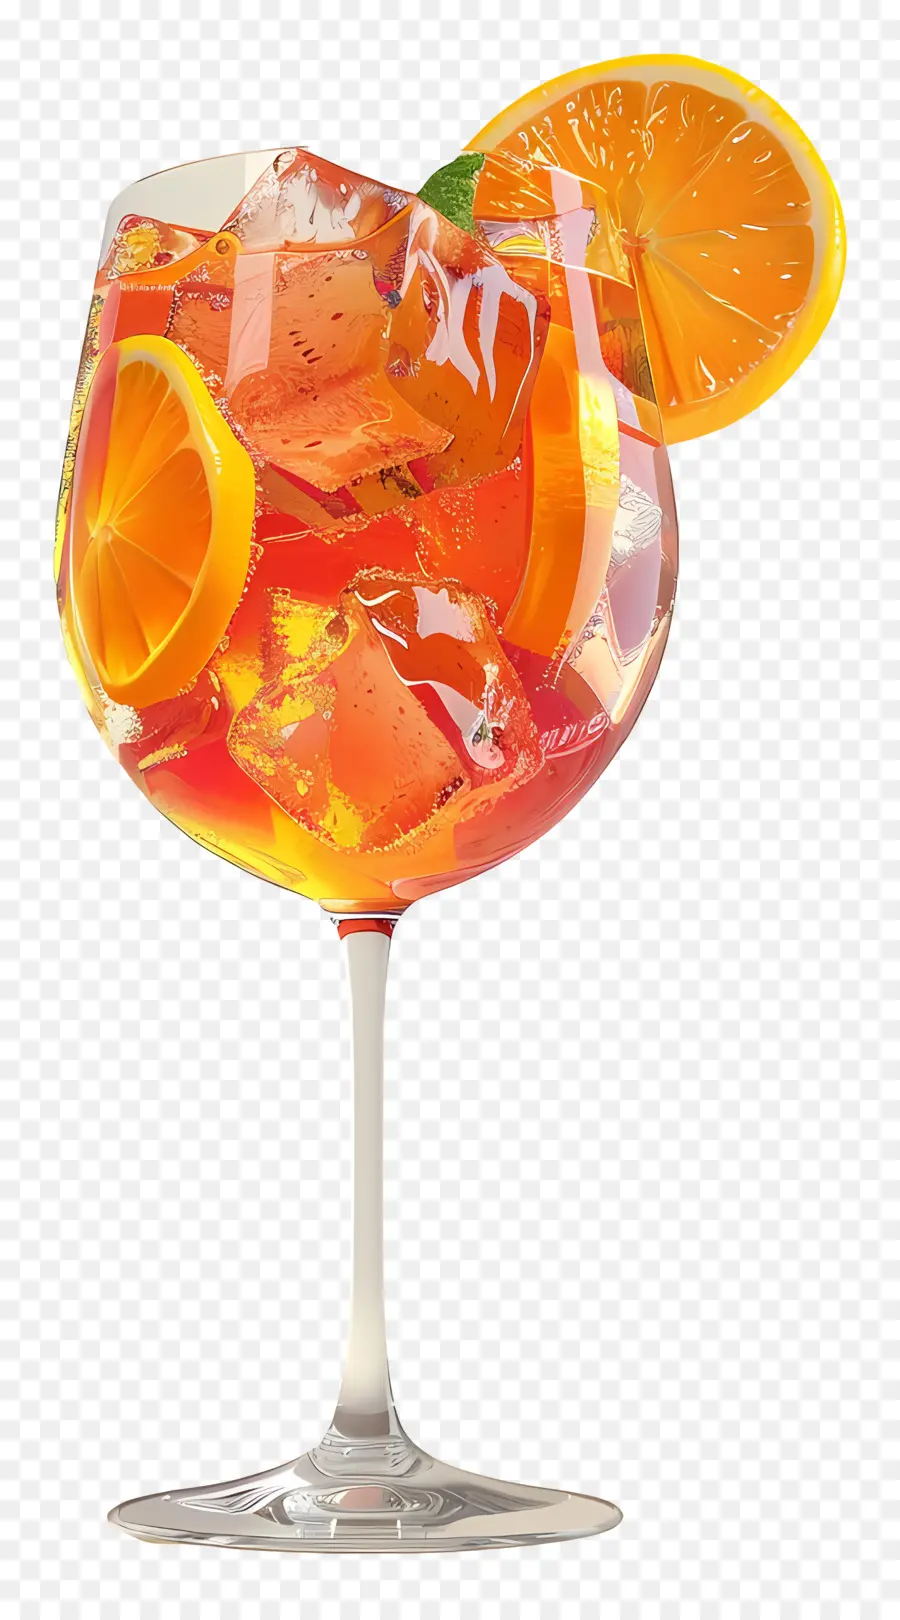 Aperol Orange Getränk Minzblätter Scheibe aus orangefarbenem Glas Wasser - Glas orange Getränk mit Minzblättern